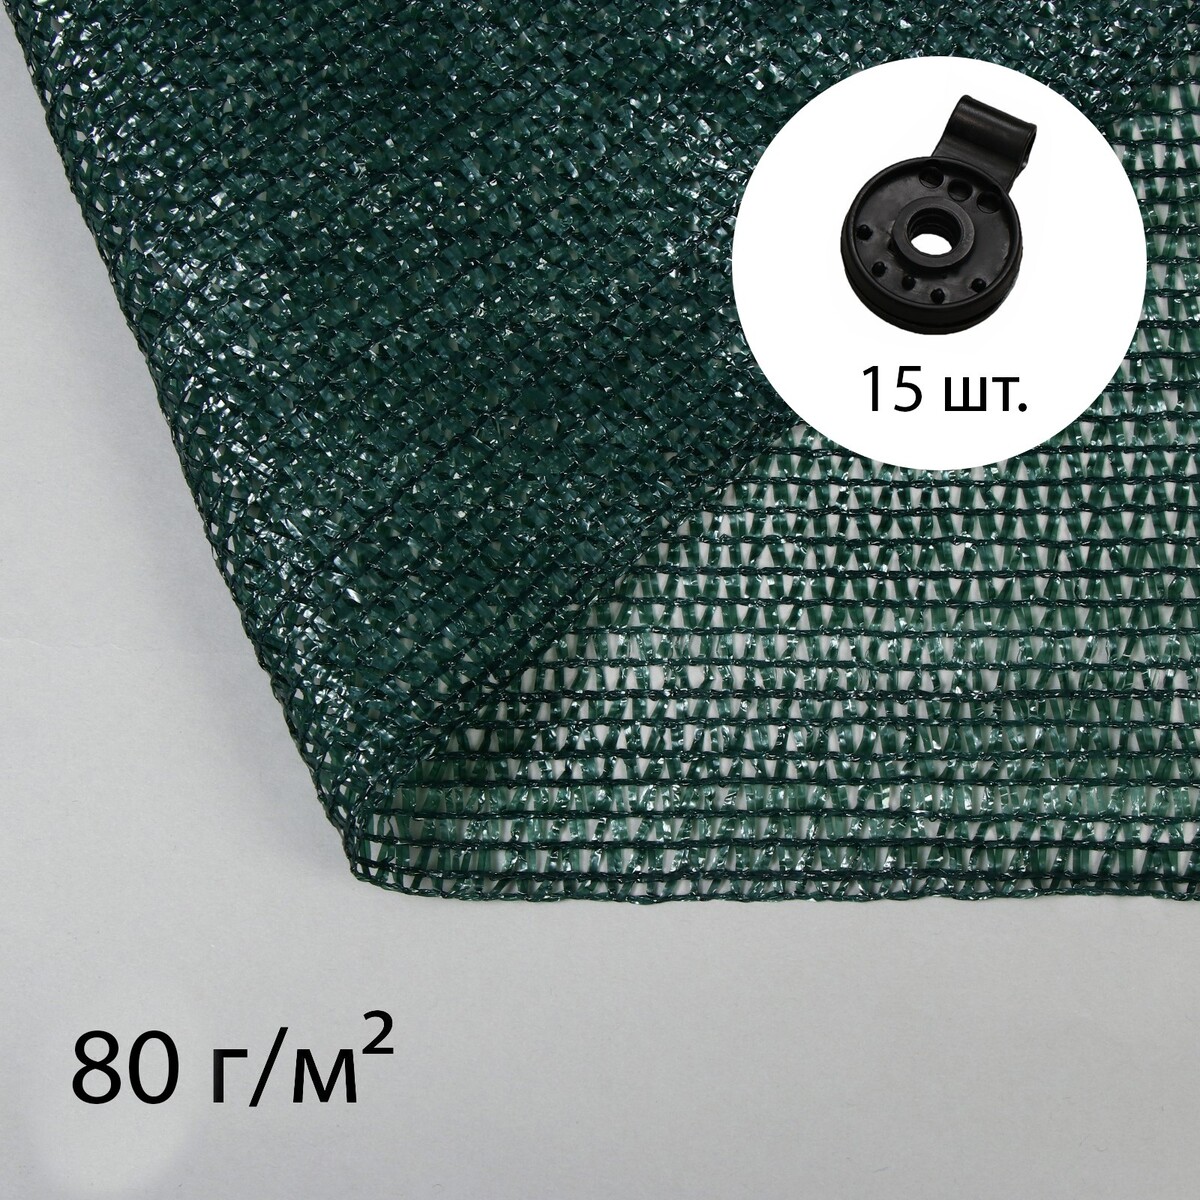 Сетка затеняющая, 5 × 2 м, плотность 80 г/м², зеленая, в наборе 15 клипс сетка затеняющая 5 × 2 м плотность 80 г м² зелёная в наборе 15 клипс